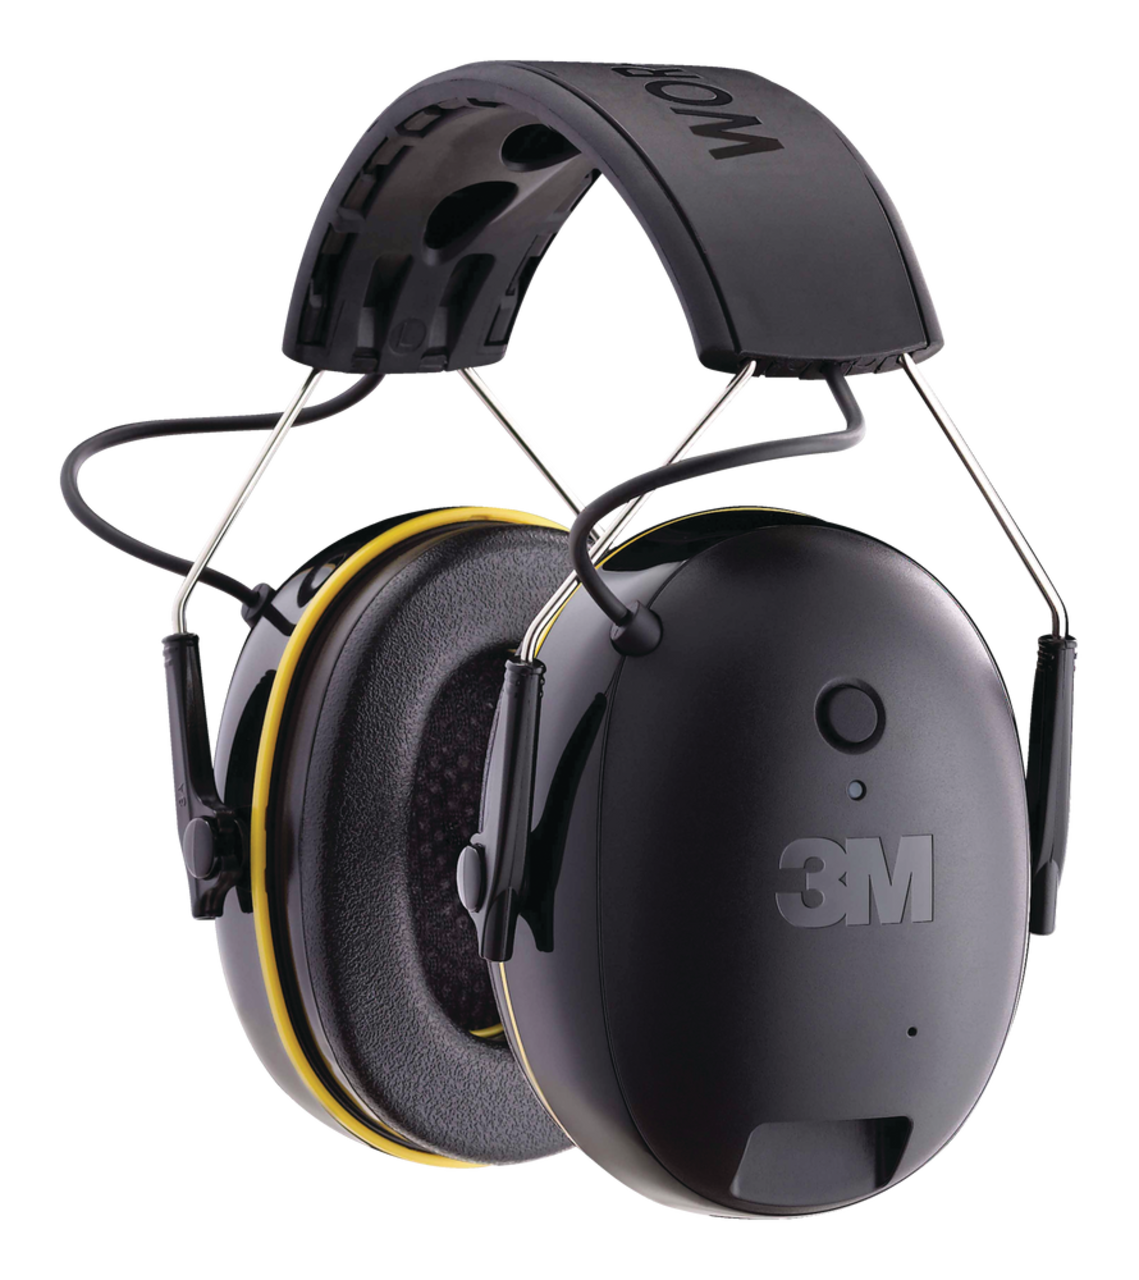 Casque de protection auditif Bluetooth cote de réduction du bruit de 24 dB  3M WorkTunes, noir/jaune